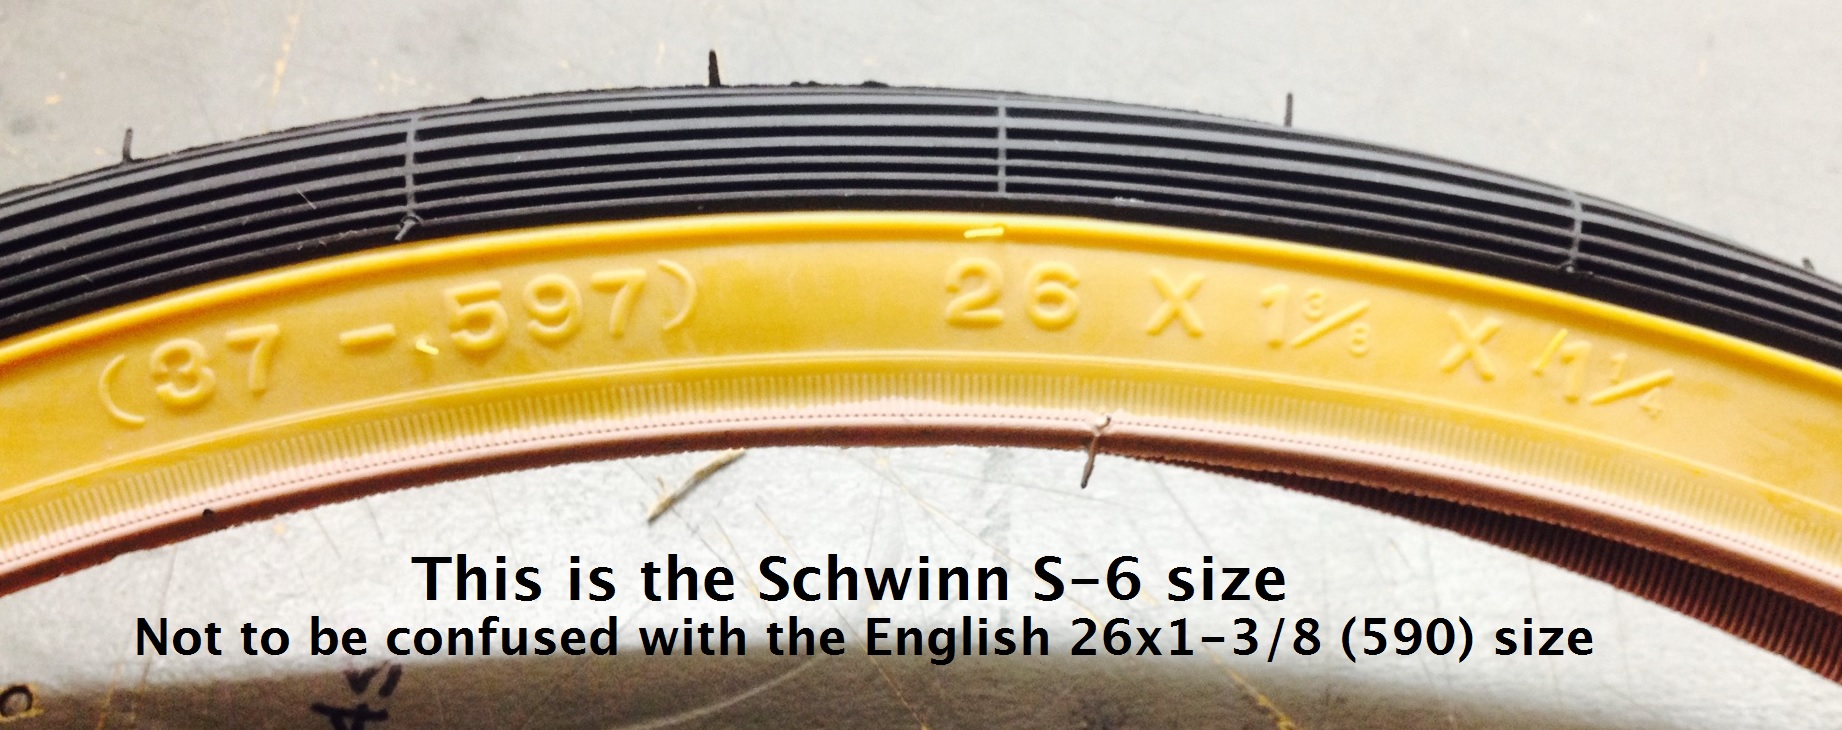 schwinn tires